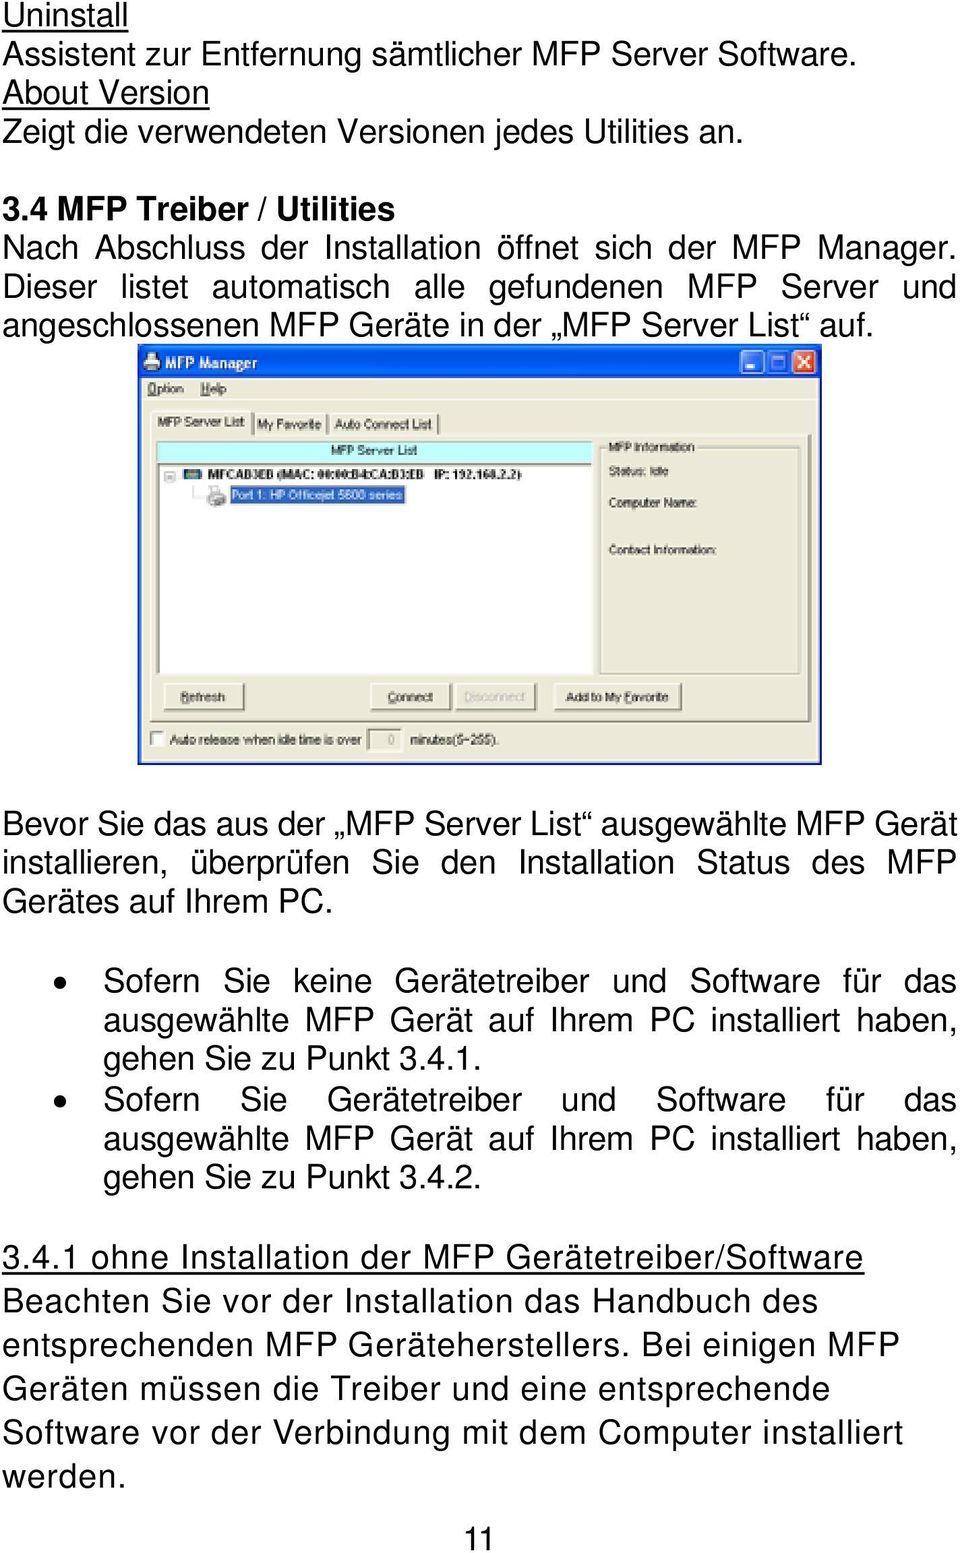 Bevor Sie das aus der MFP Server List ausgewählte MFP Gerät installieren, überprüfen Sie den Installation Status des MFP Gerätes auf Ihrem PC.